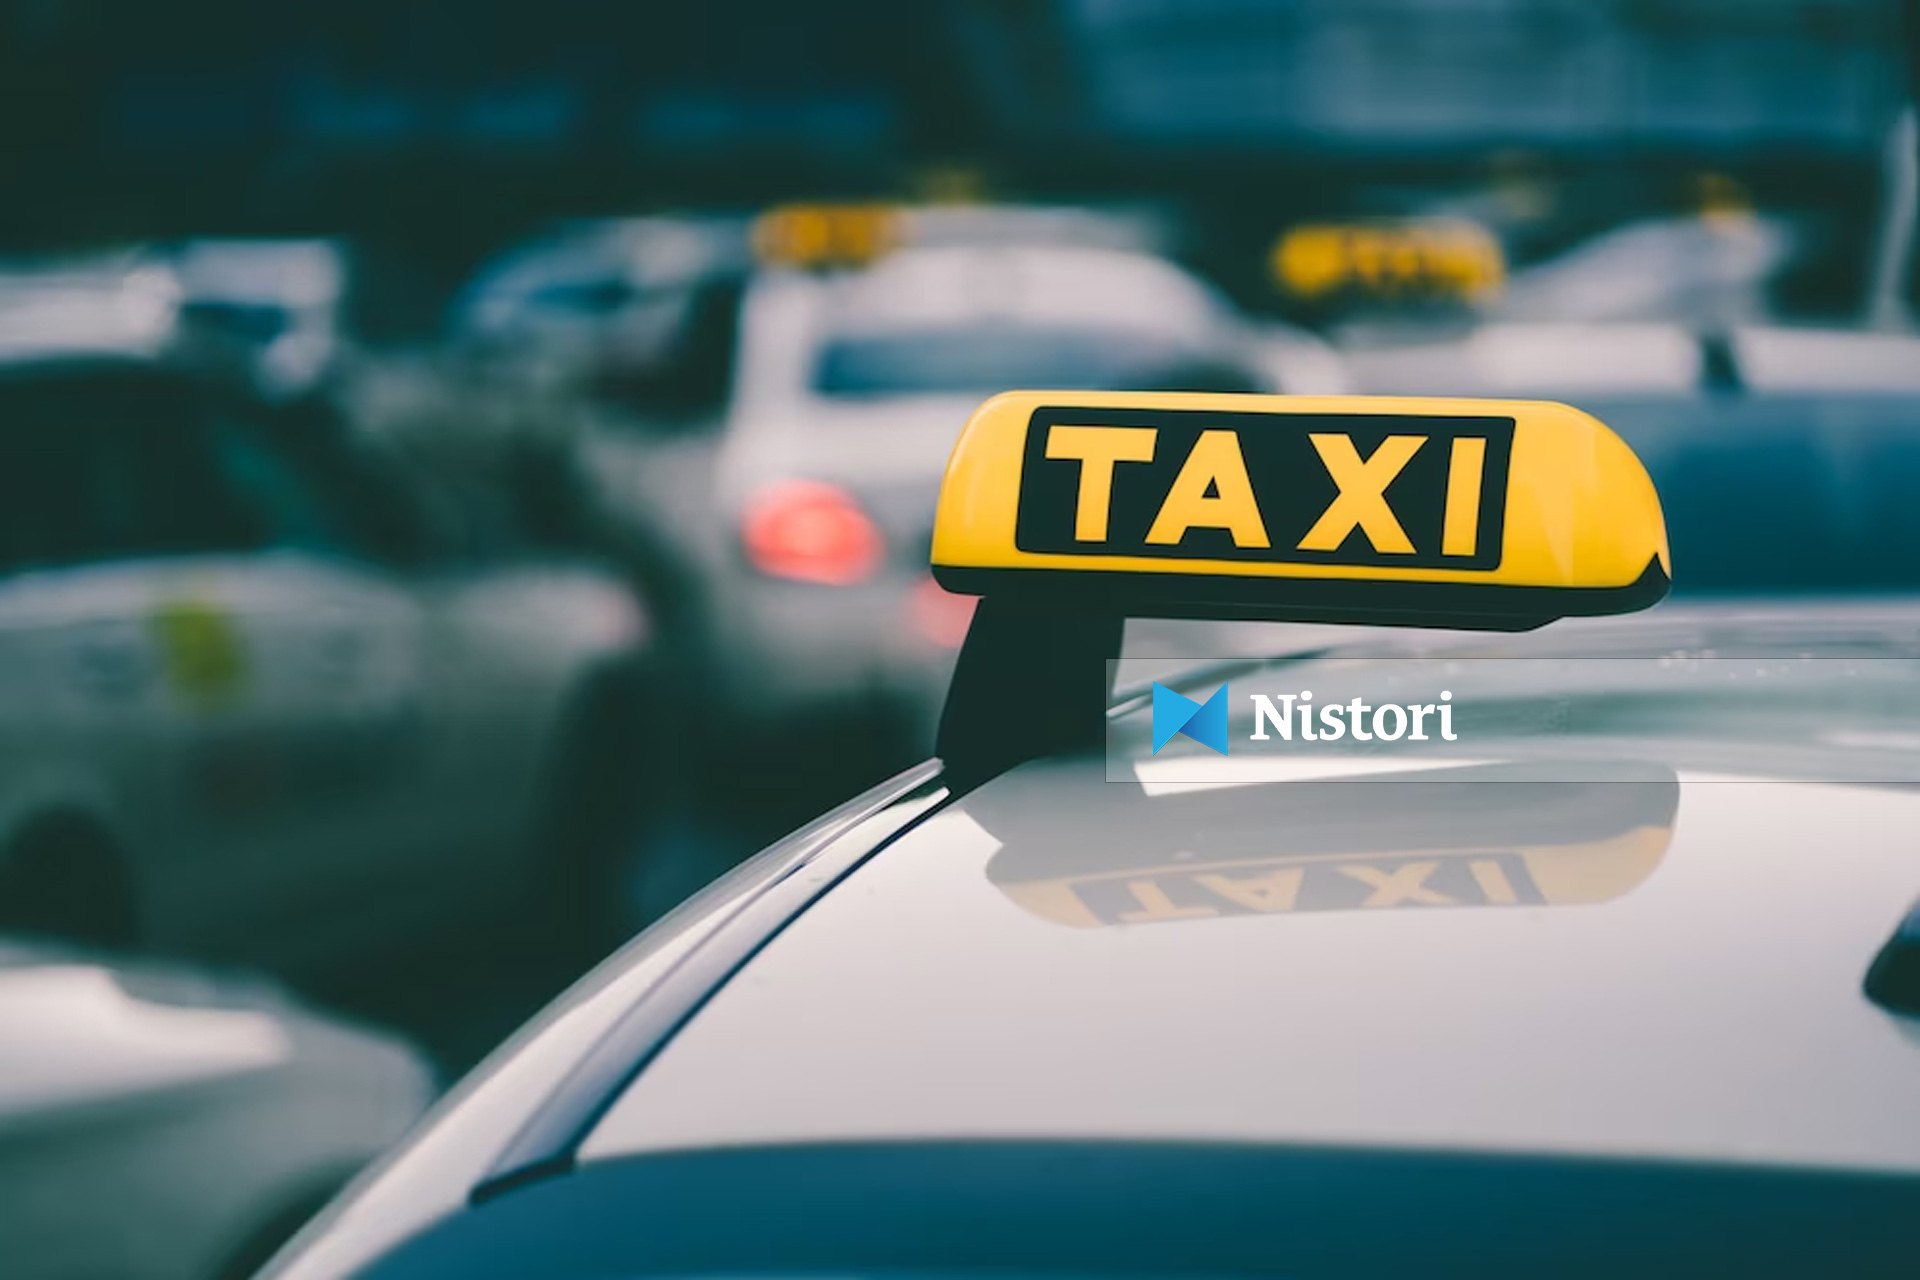 Mbi 14 milionë udhëtarë në RMV e kanë shfrytëzuar taksin